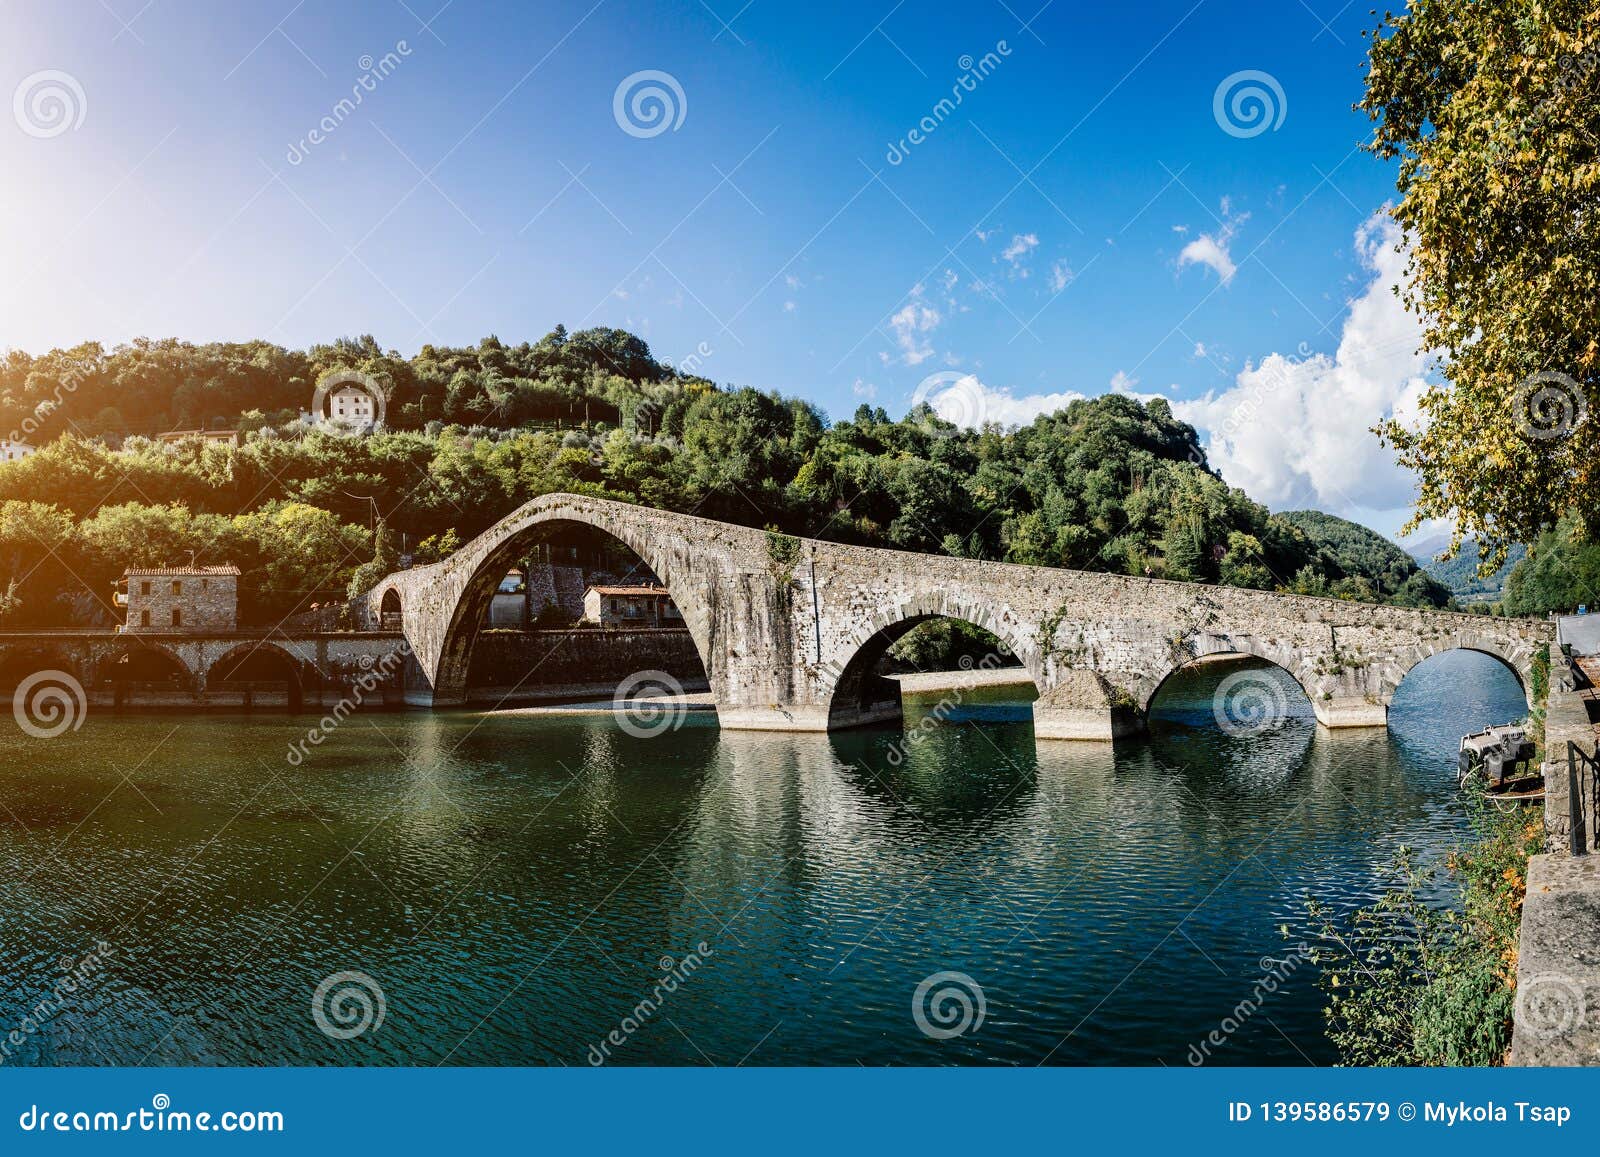 Picturesque View Of Medieval Stone Arch Bridge Ponte Della Maddalena Across River Serchio In Borgo A Mozzano Lucca Tuscany Stock Image Image Of Arch Picturesque 139586579